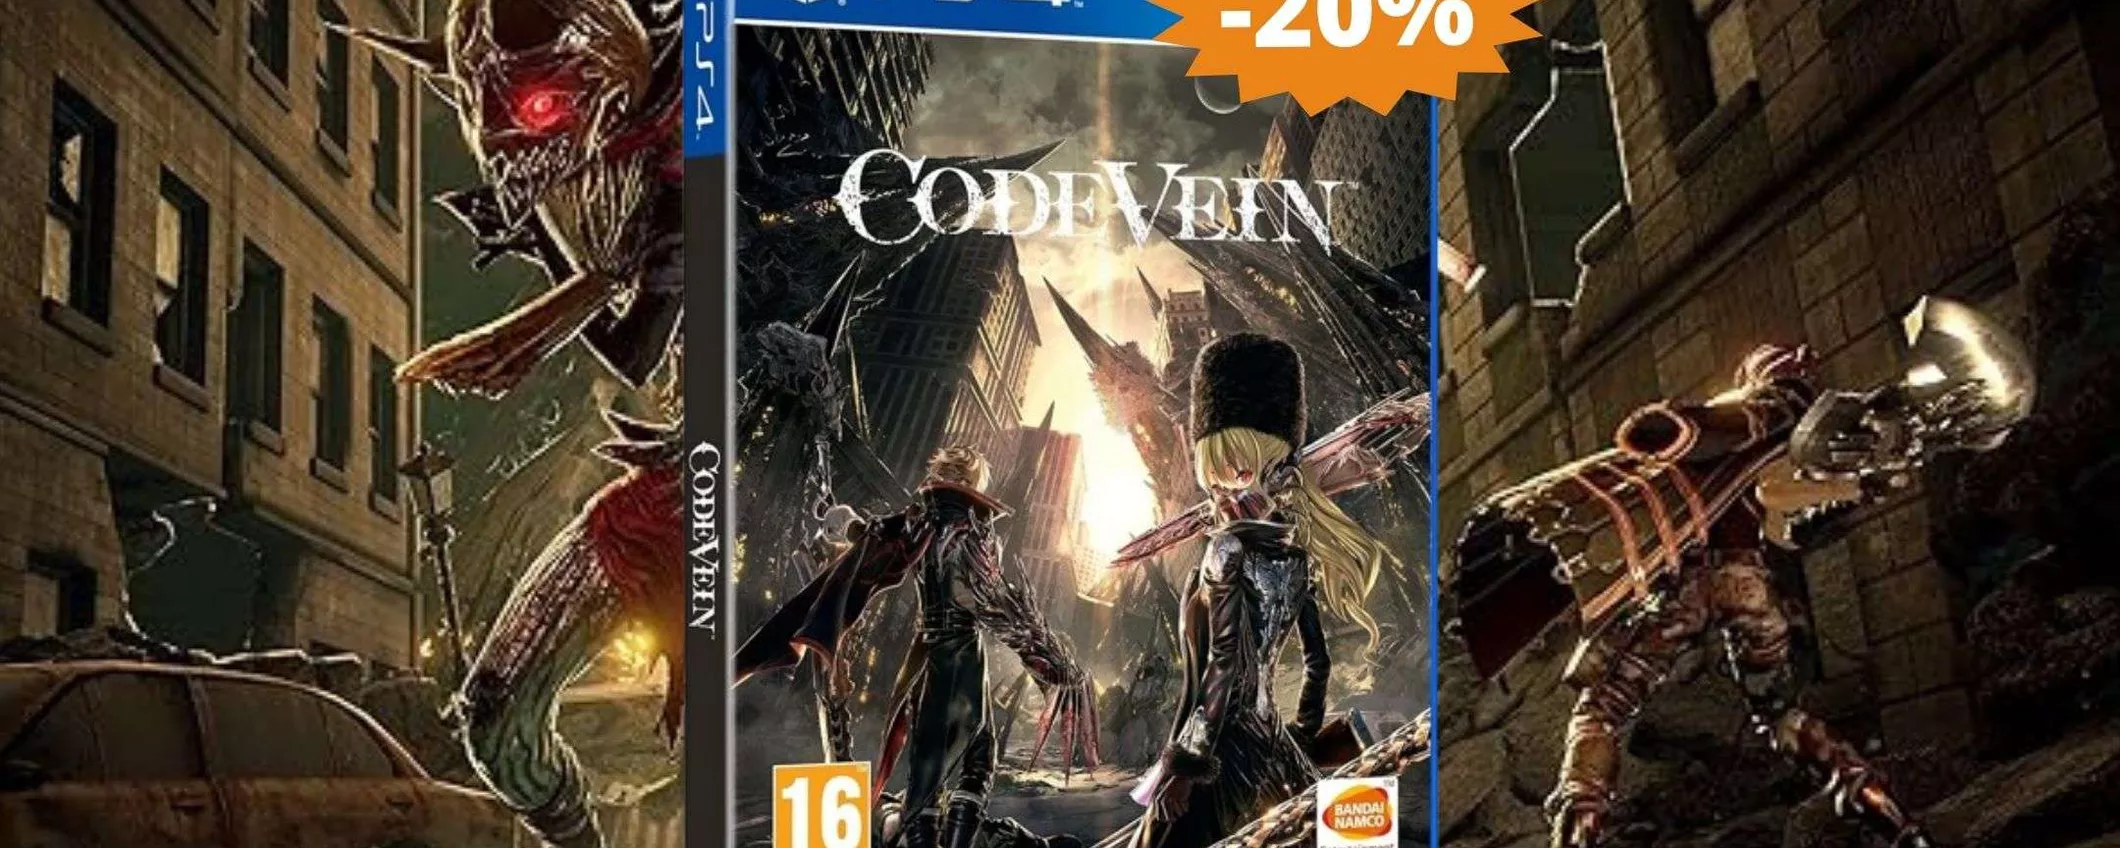 Code Vein per PS4: avventura EPICA in SUPER sconto del 20%